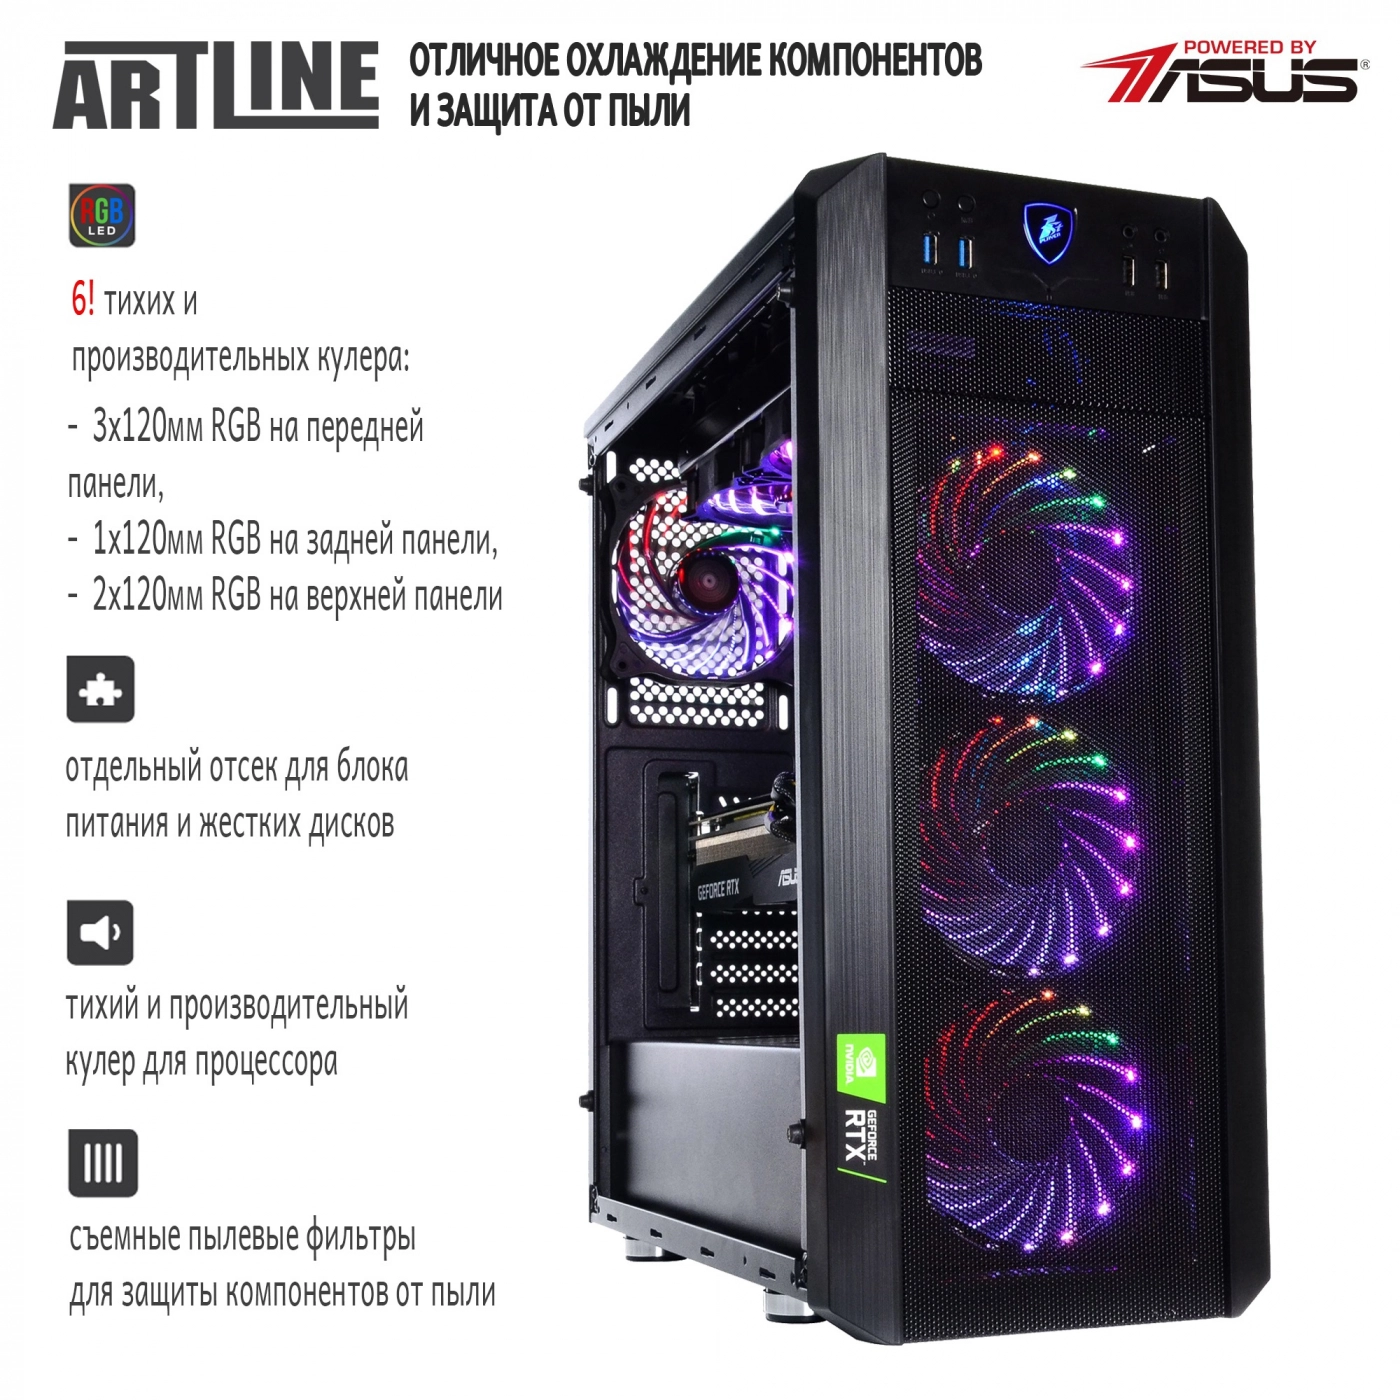 Купить Компьютер ARTLINE Gaming X93v55 - фото 4